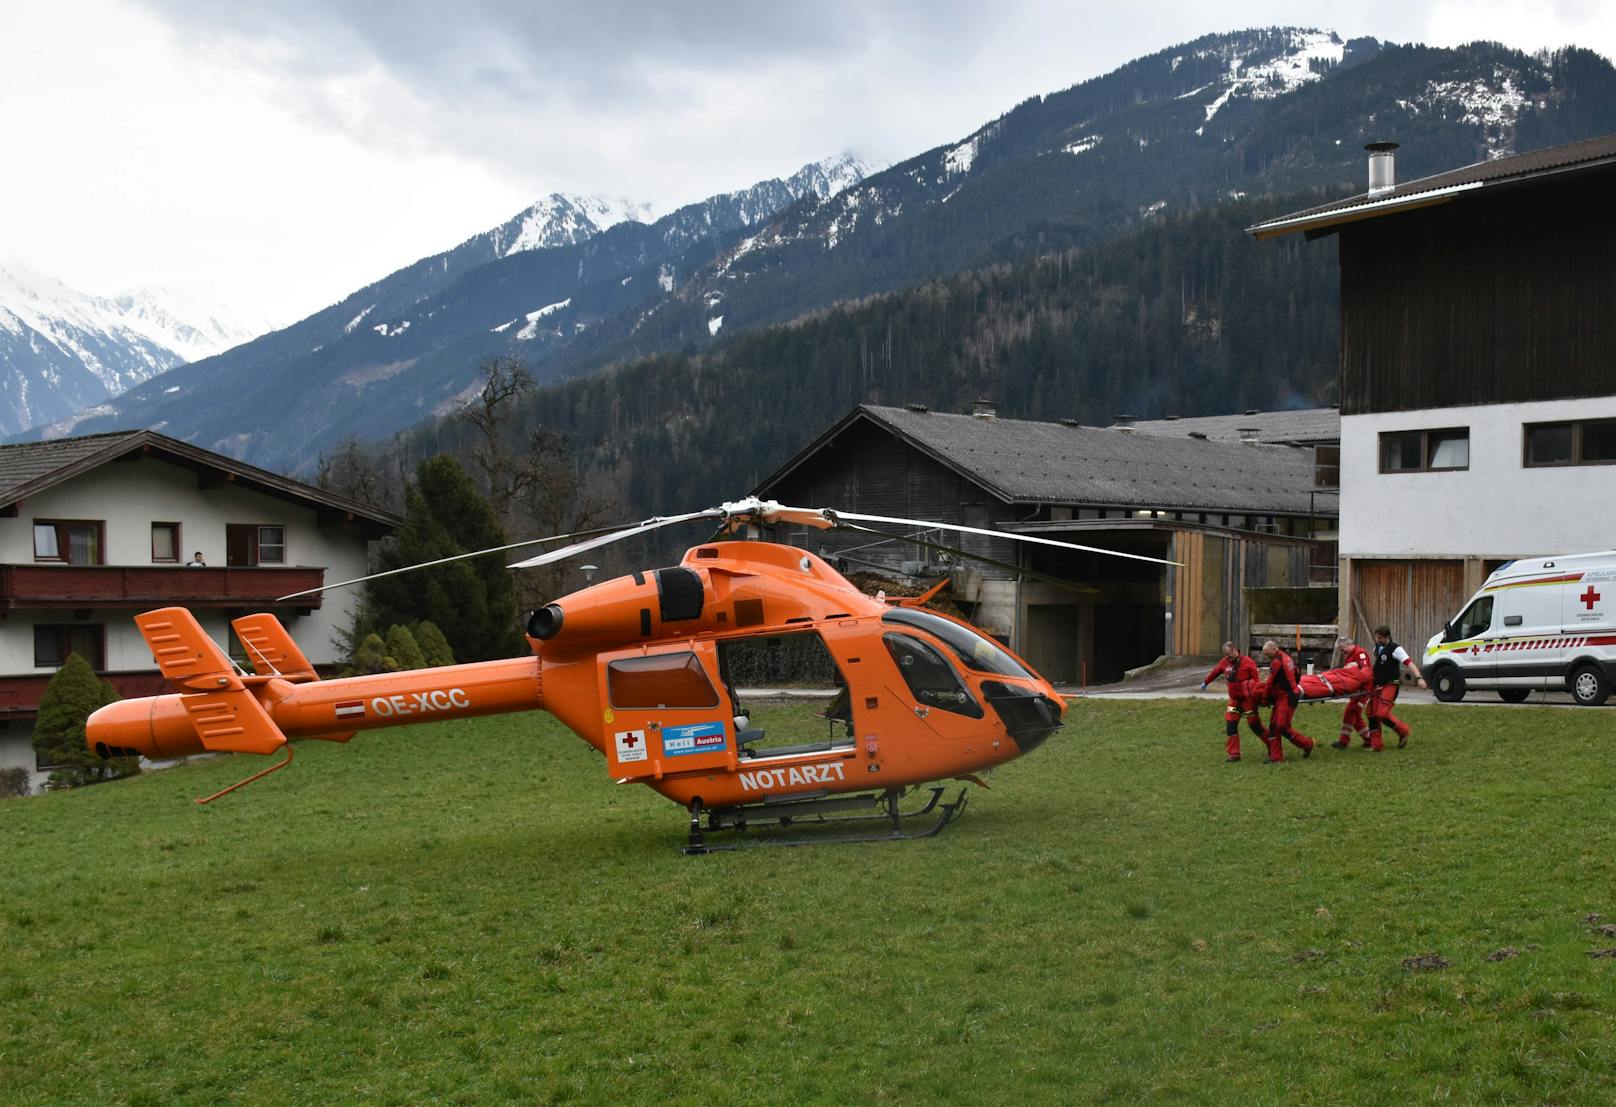 Der Buslenker wurde mit Verletzungen unbestimmten Grades mit dem Rettungshubschrauber "Martin7" ins LKH Innsbruck gebracht. Durch den Unfall wurden laut derzeitigen Ermittlungsstand keine weiteren Personen verletzt.